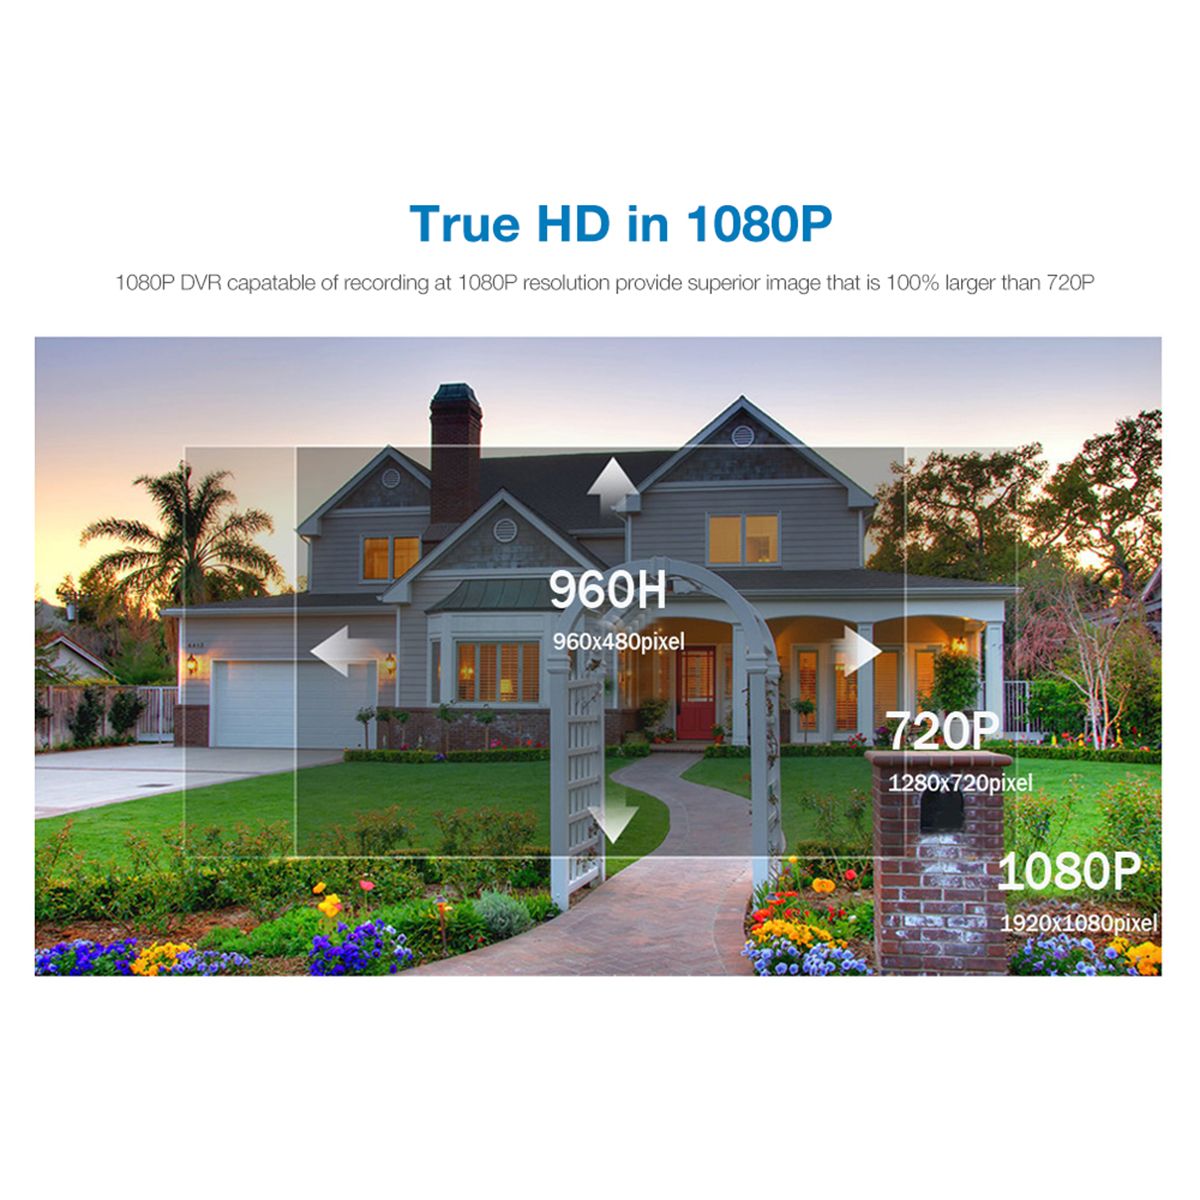 8LEDs-HD-1080p-PTZ-Outdoor-IP-Camera-Pan-Tilt-5X-Zoom-IR-Network-Security-Camera-1529325